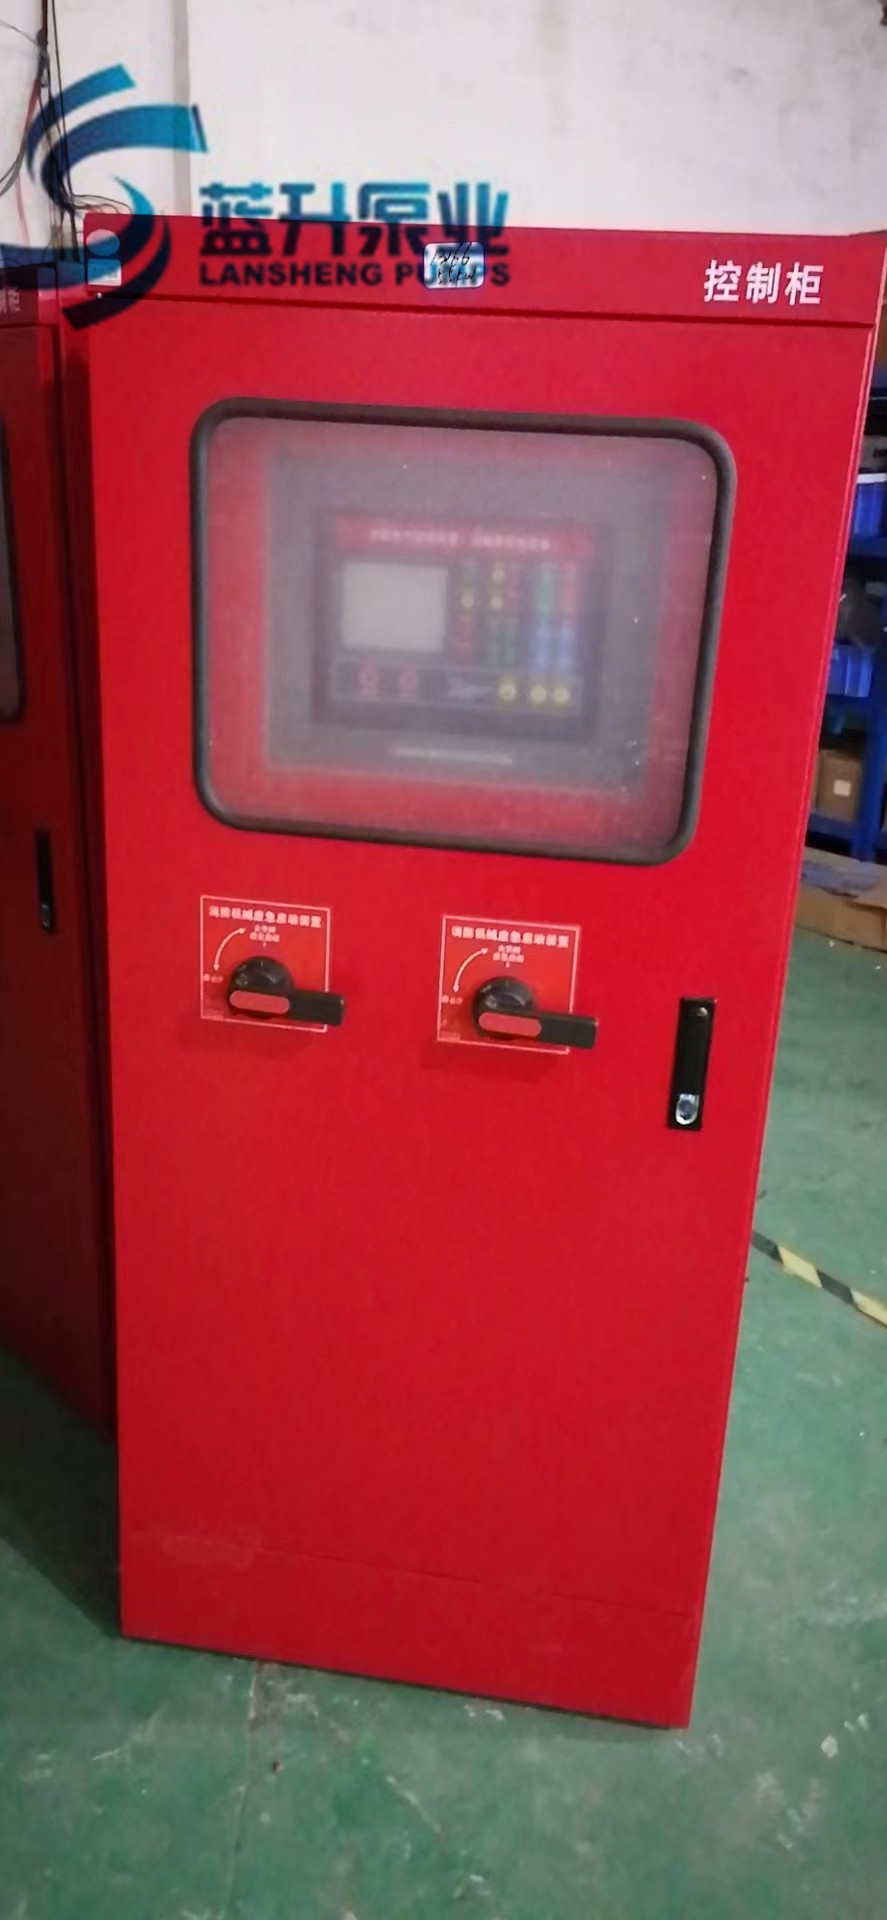 山东济南淄博消防泵机械应急启动控制柜功能说明